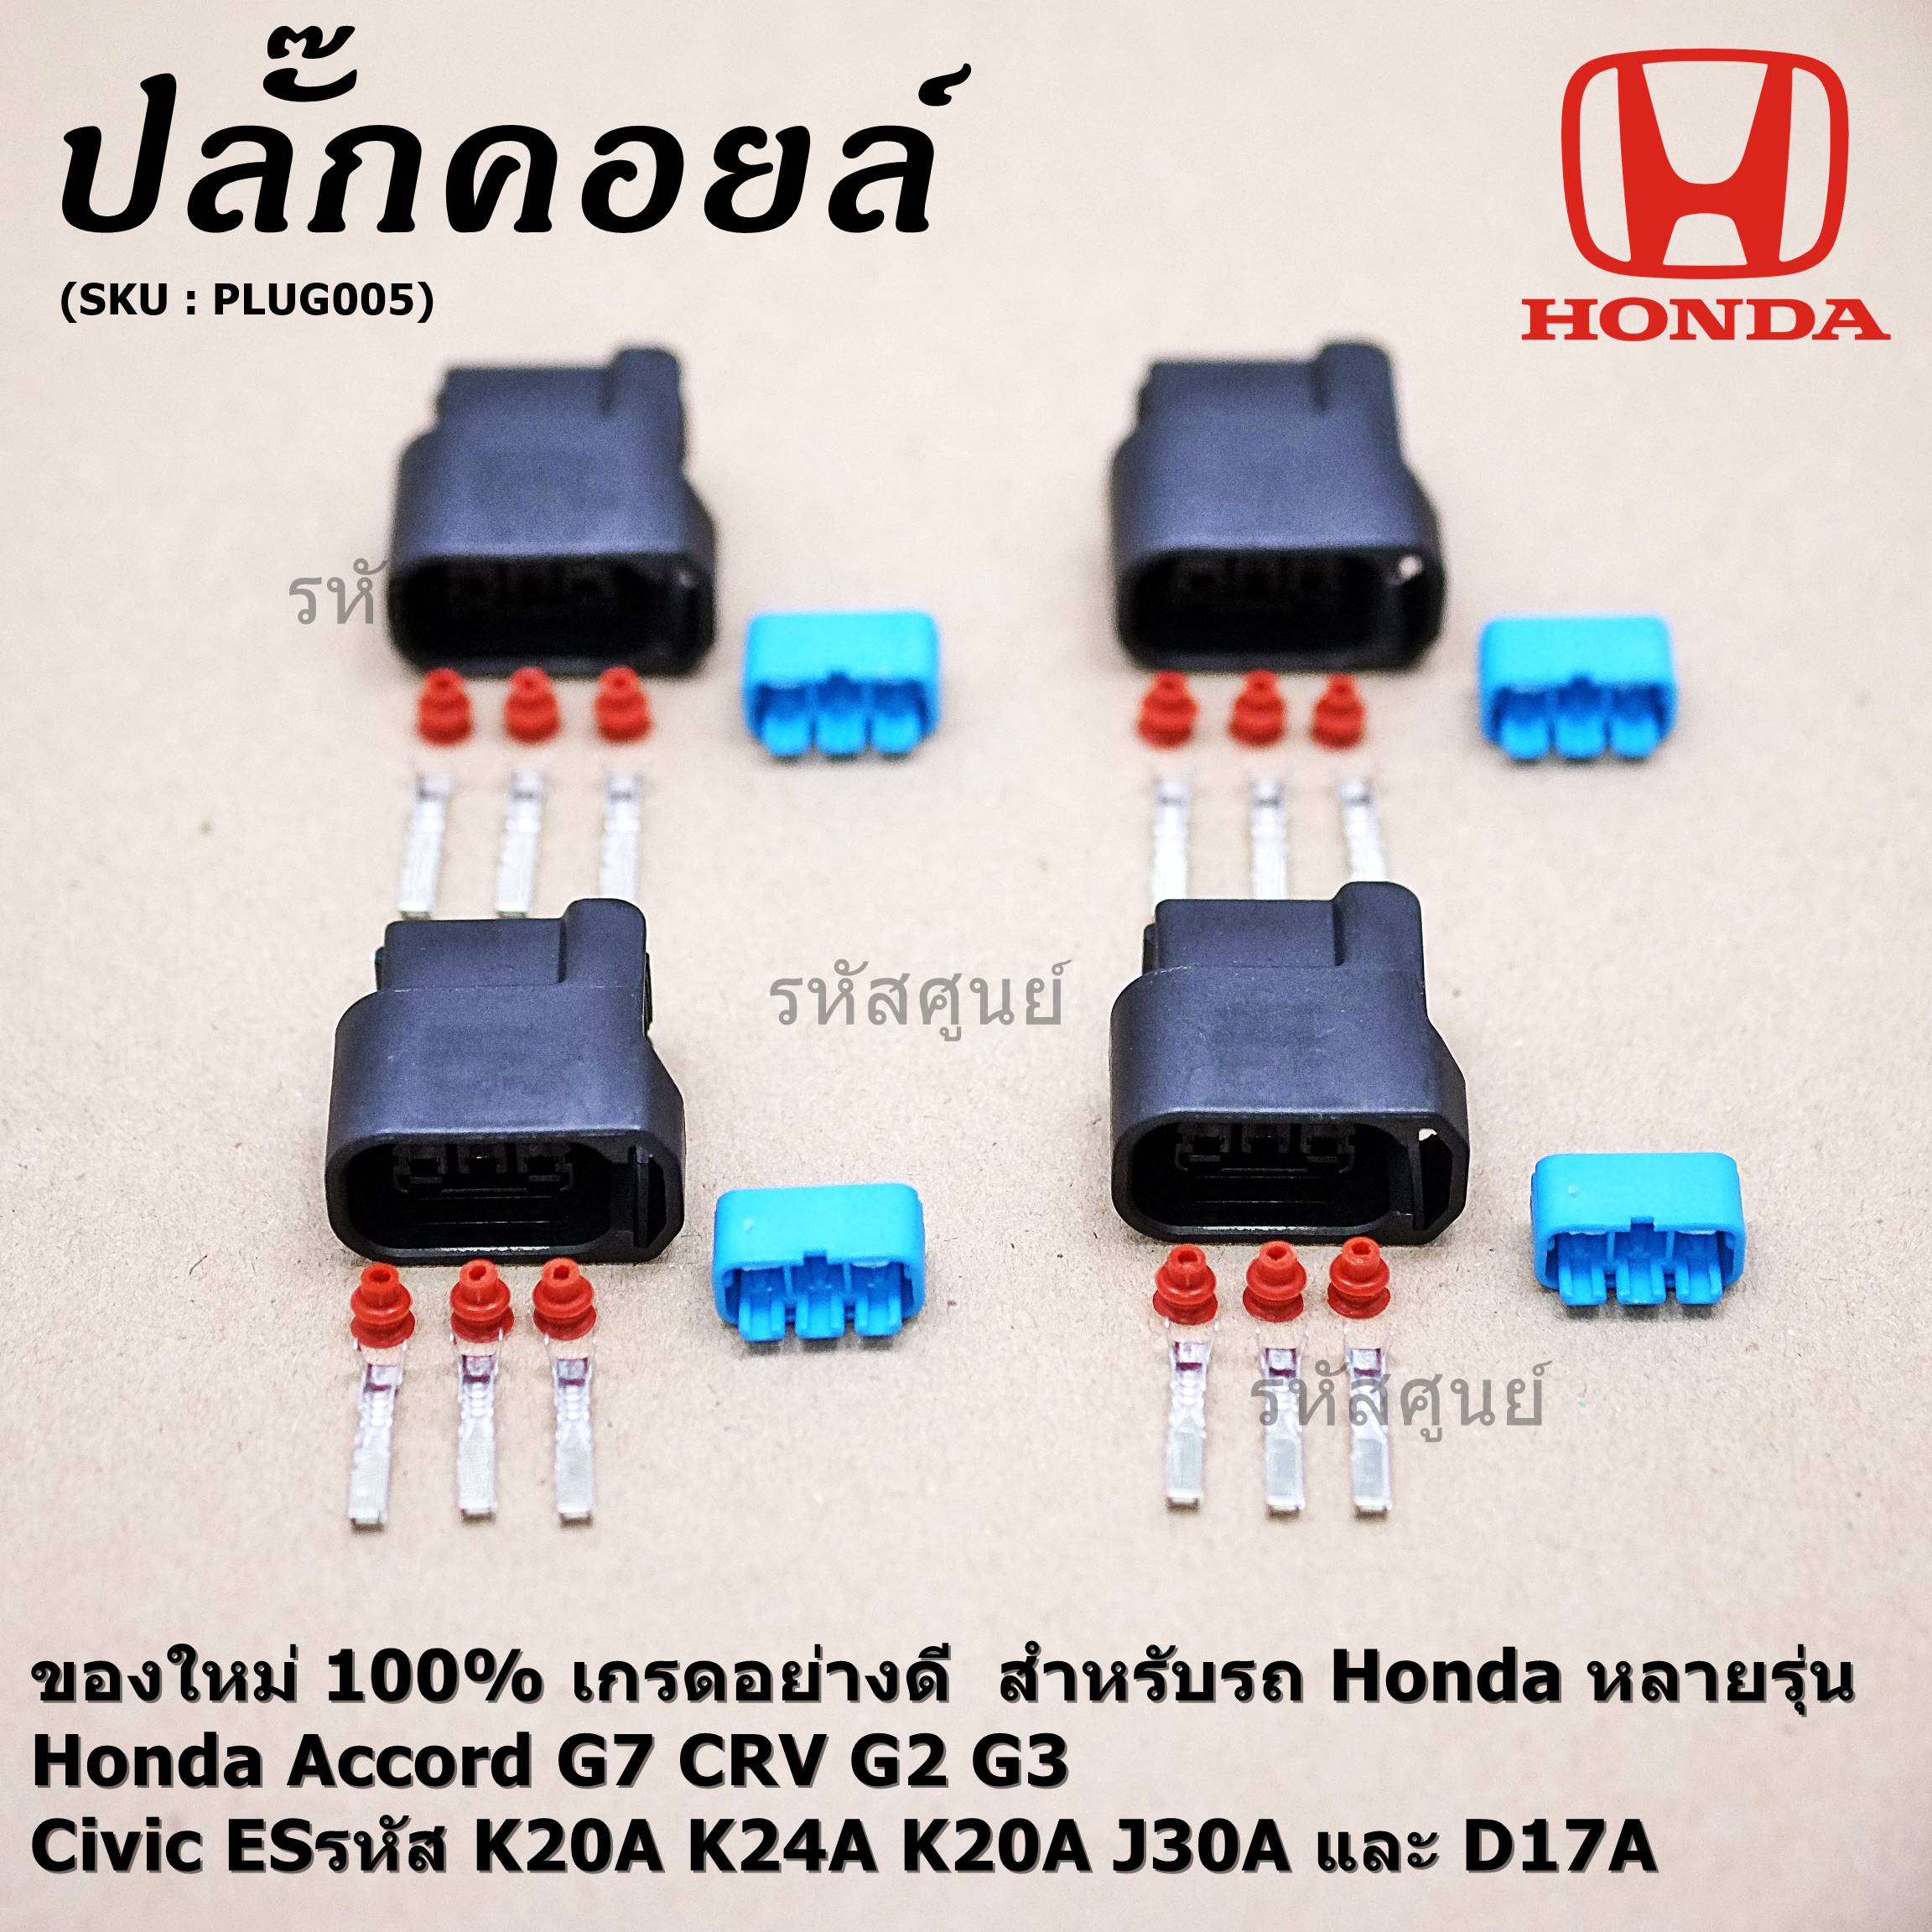 (ราคา/ 1 ปลั๊ก) ***ราคาพิเศษ***ปลั๊กคอยส์ ของใหม่ 100% เกรดอย่างดี  สำหรับรถ Honda หลายรุ่น Honda Accord G7 CRV G2 G3 และ Civic ESรหัส K20A K24A K20A J30A และ D17A